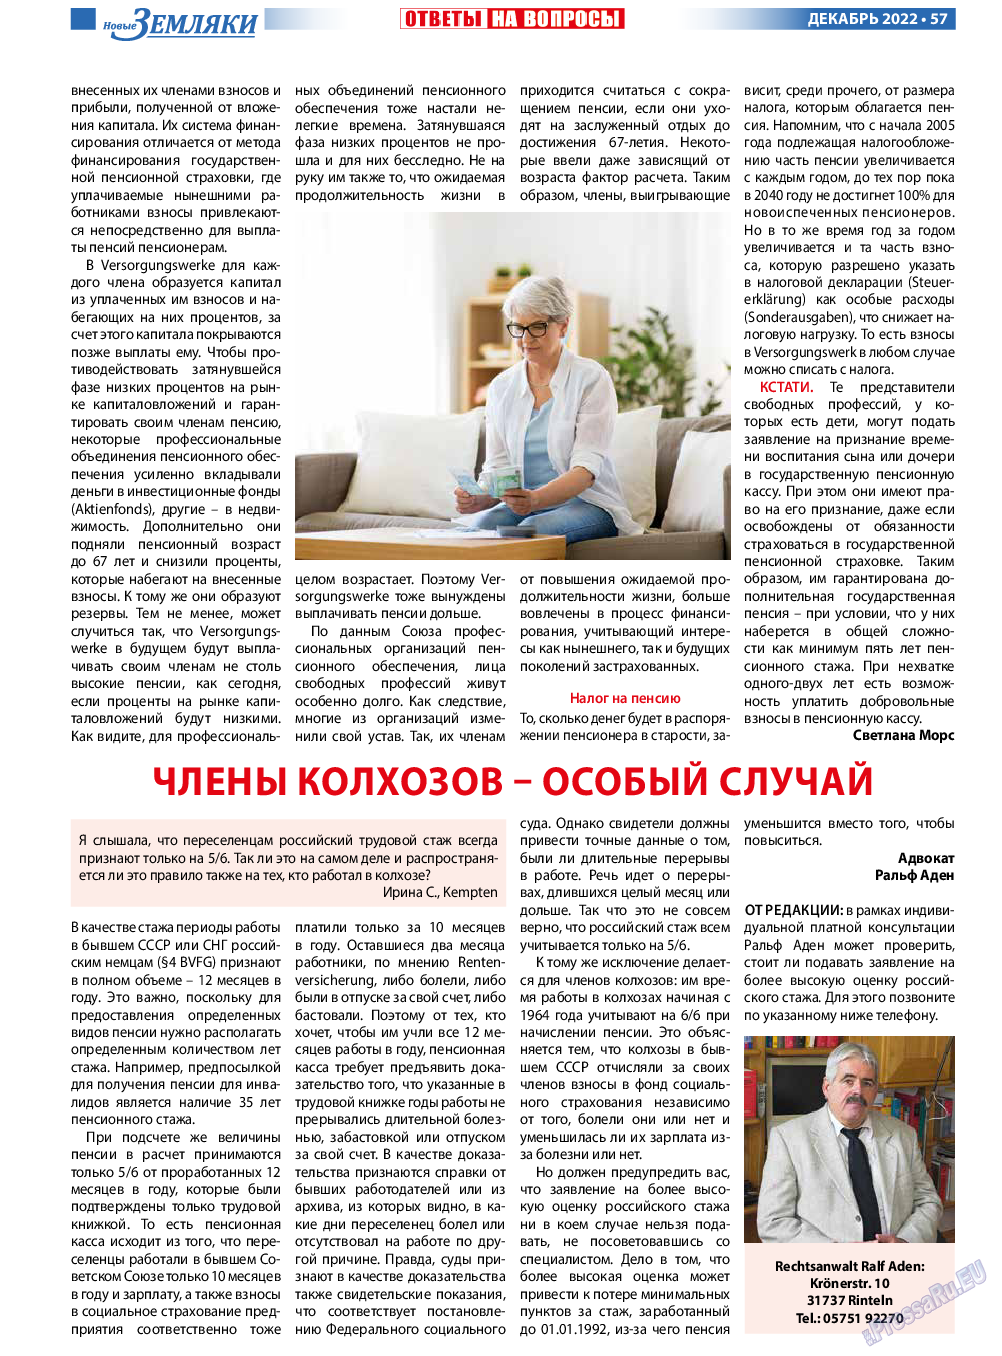 Новые Земляки, газета. 2022 №12 стр.57